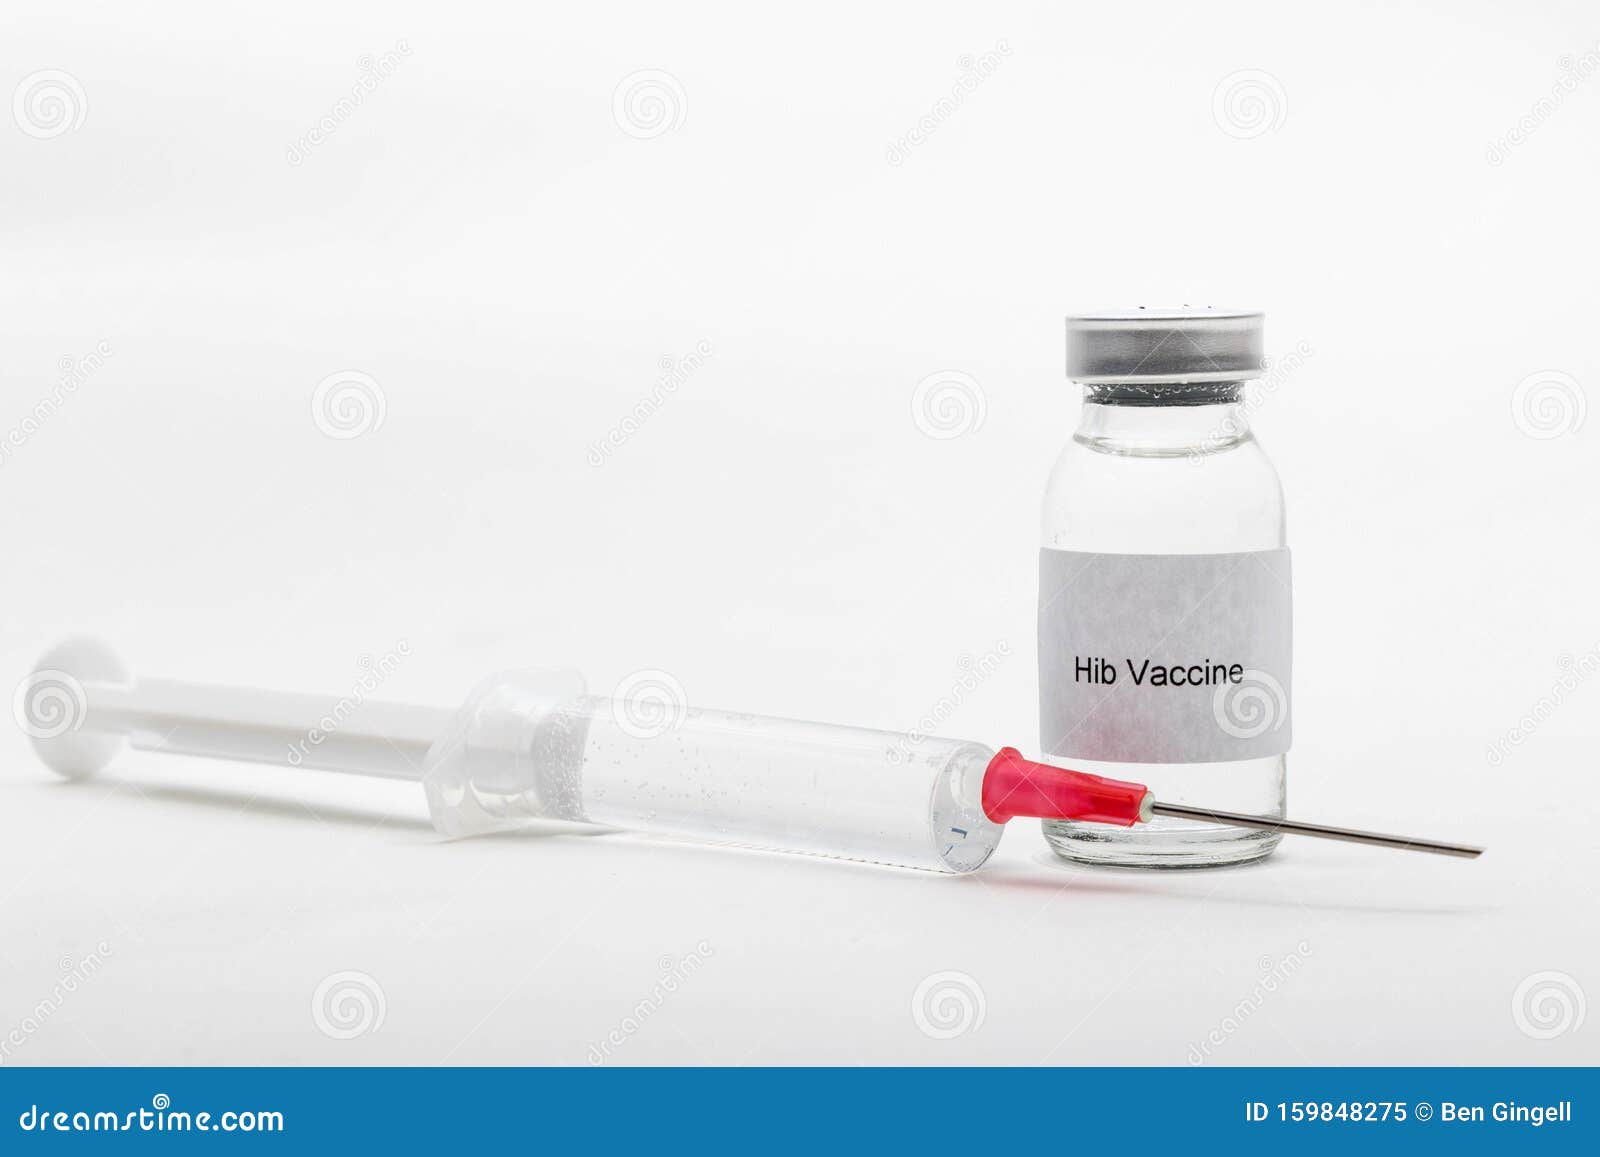 medical vials